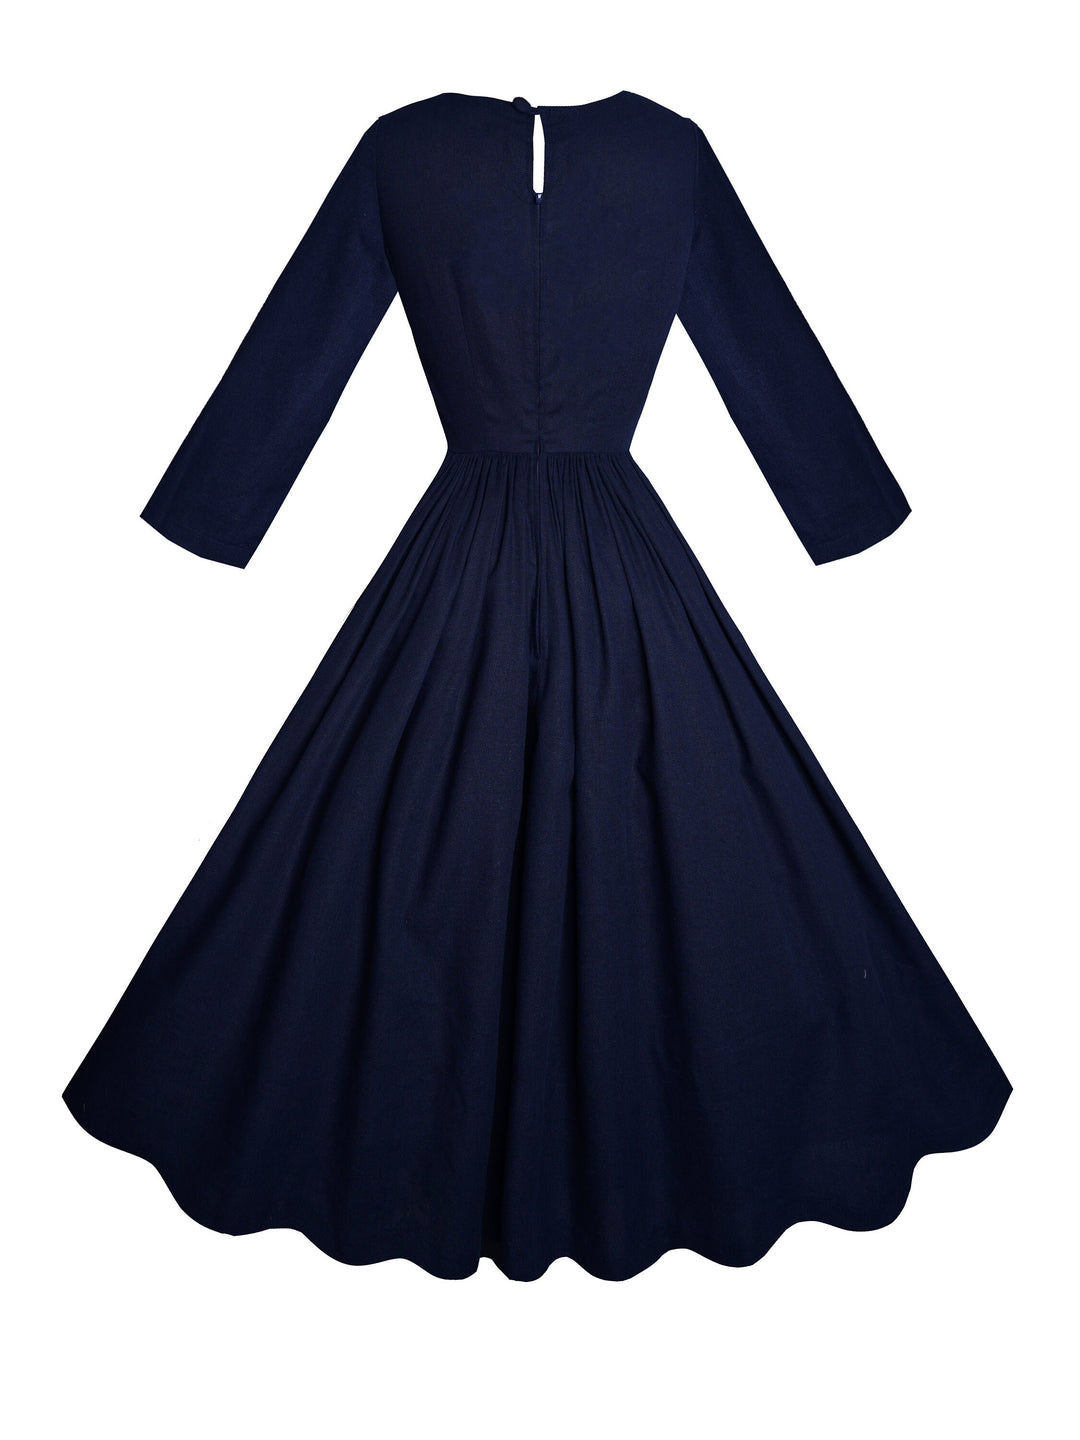 MTO - Marianne Dress in Indigo Blue Linen